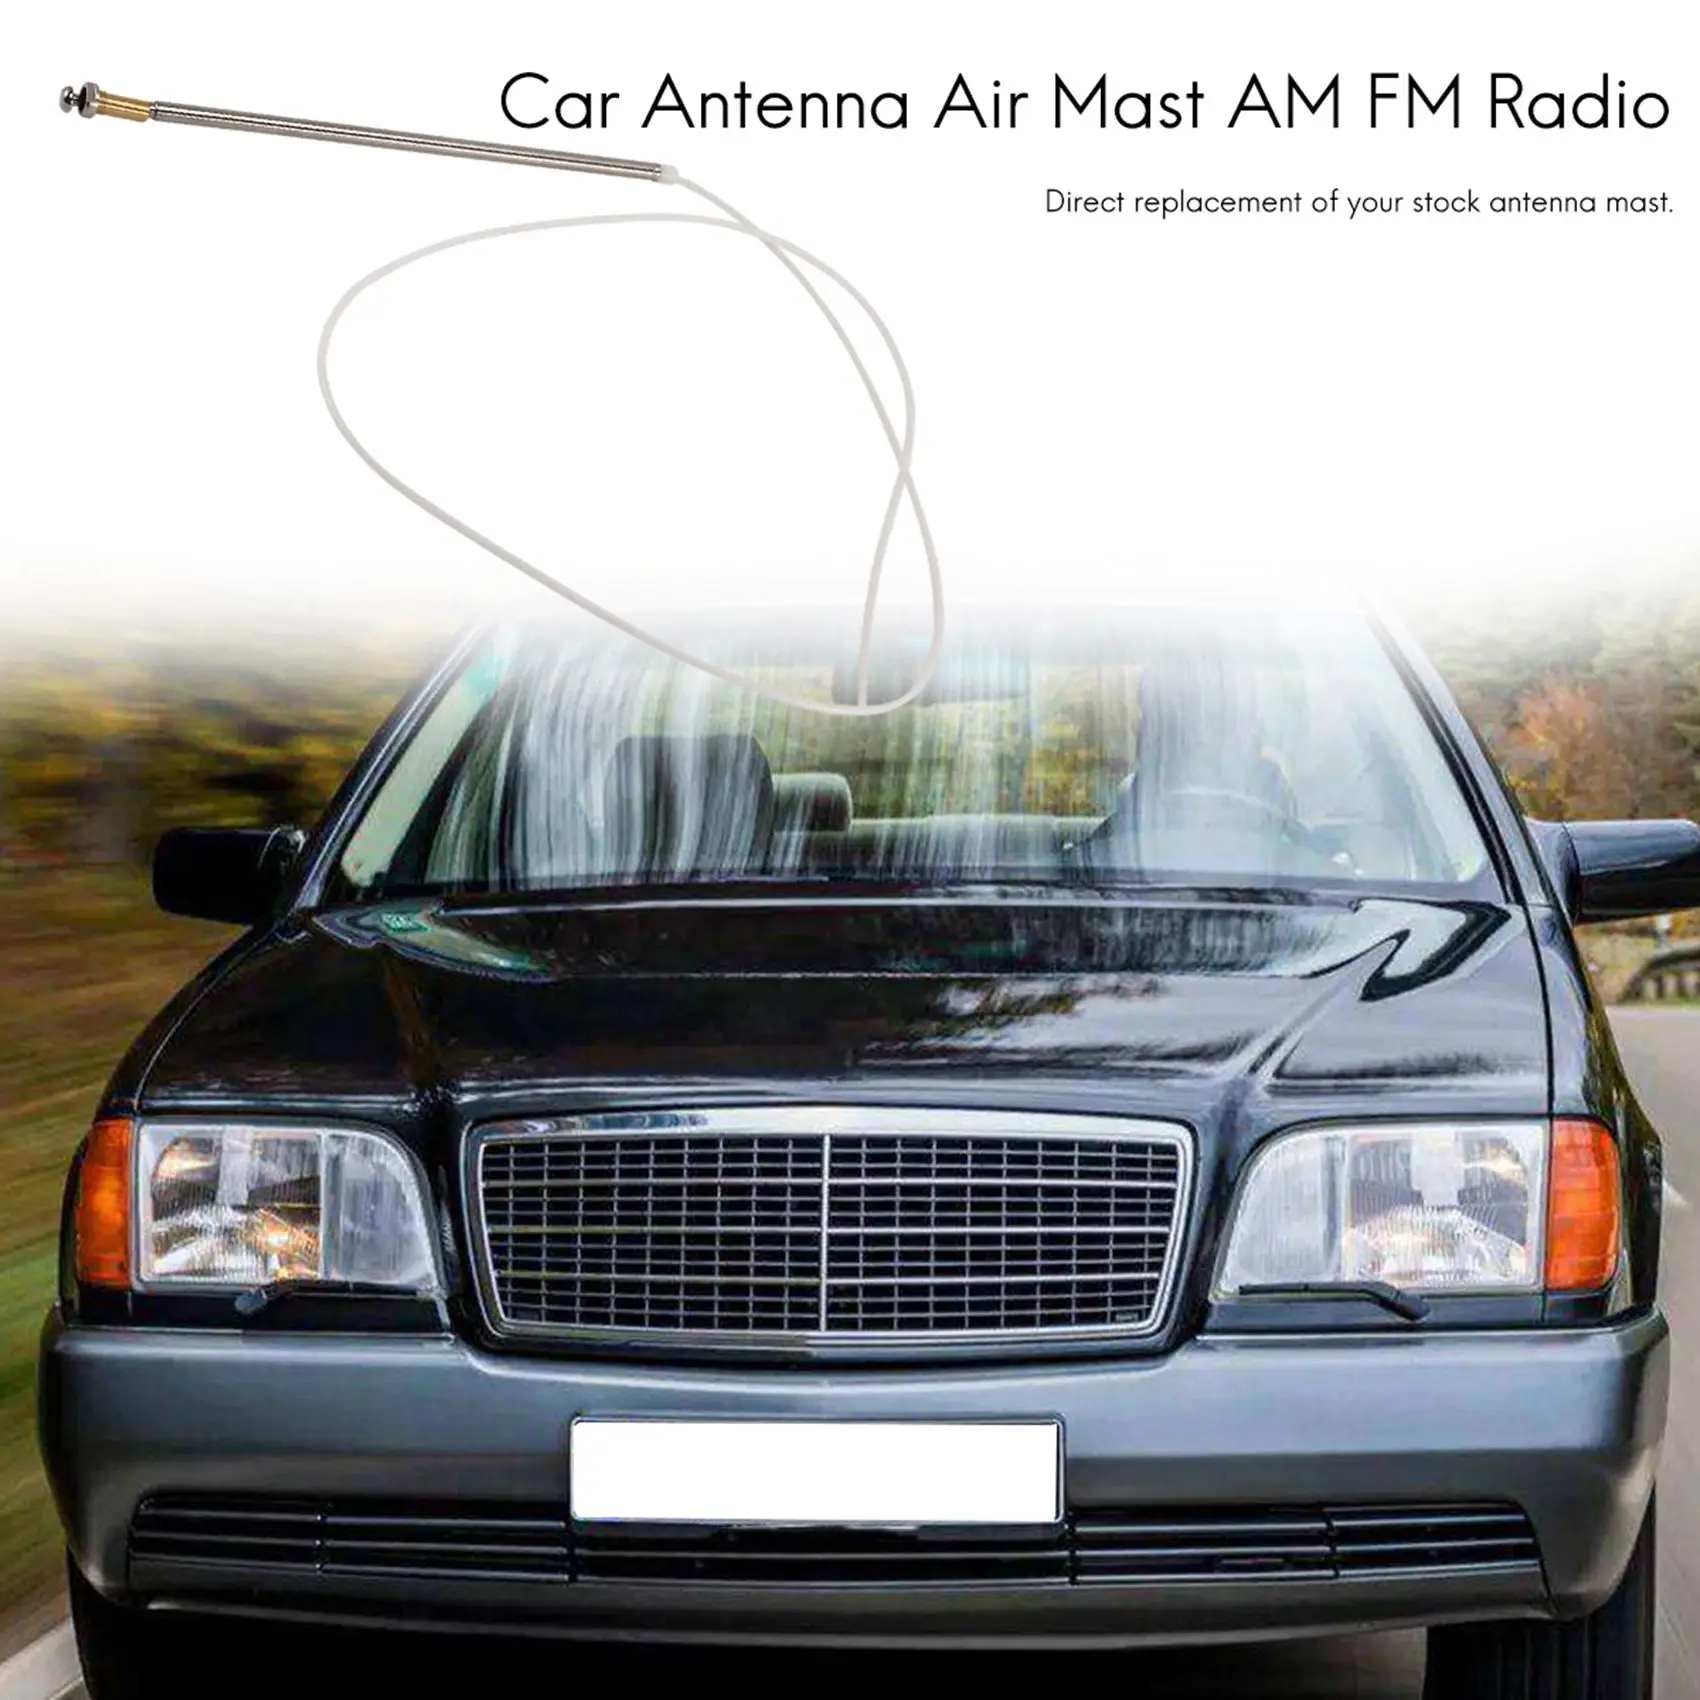 

Car Antenna Aerial Mast Am Fm Radio for Mercedes-Benz W140 W124 W202 W210 R129